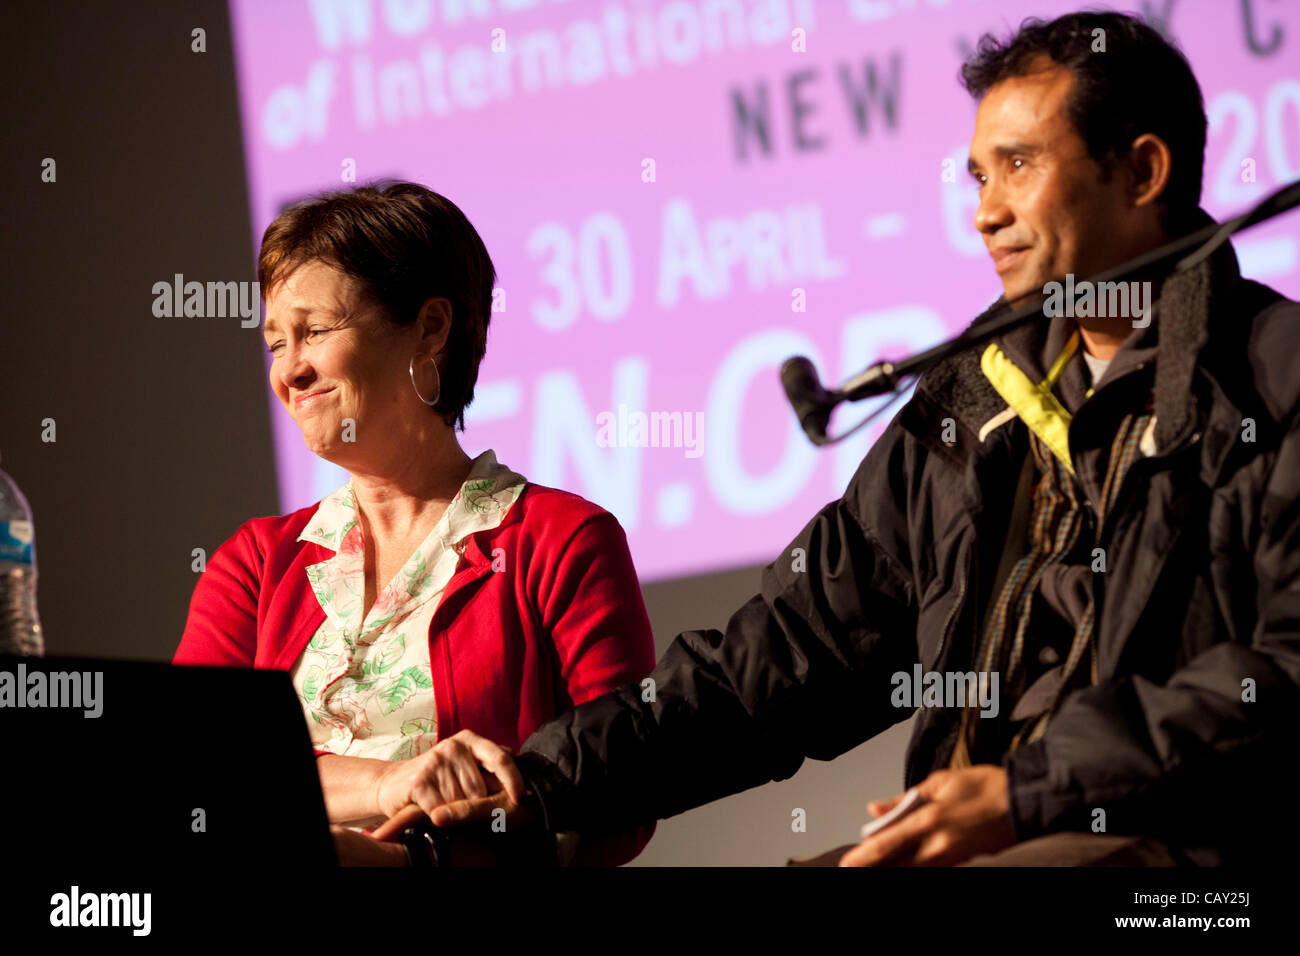 D'experts sur les droits des enfants au PEN World Voices Festival, New York, NY, le 5 mai 2012, avec co-auteurs Patricia McCormack (L) et l'ancien enfant soldat cambodgien Arn Chorn-Pond (R). Banque D'Images